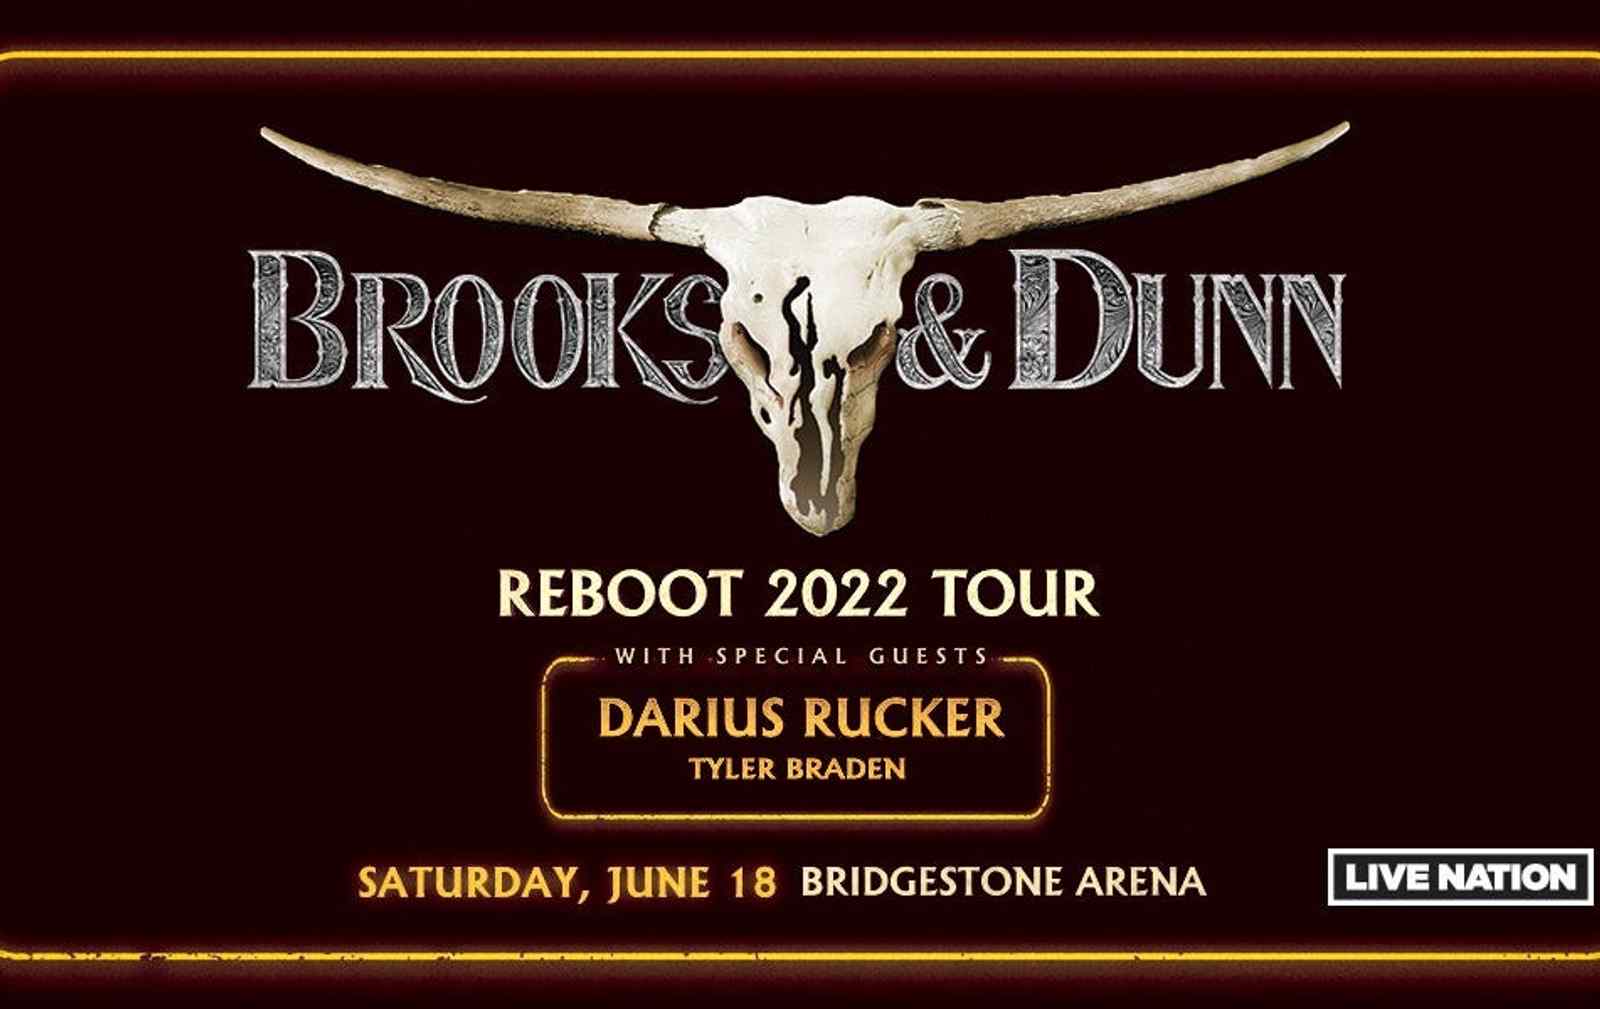 BROOKS & DUNN: REBOOT 2022 TOUR